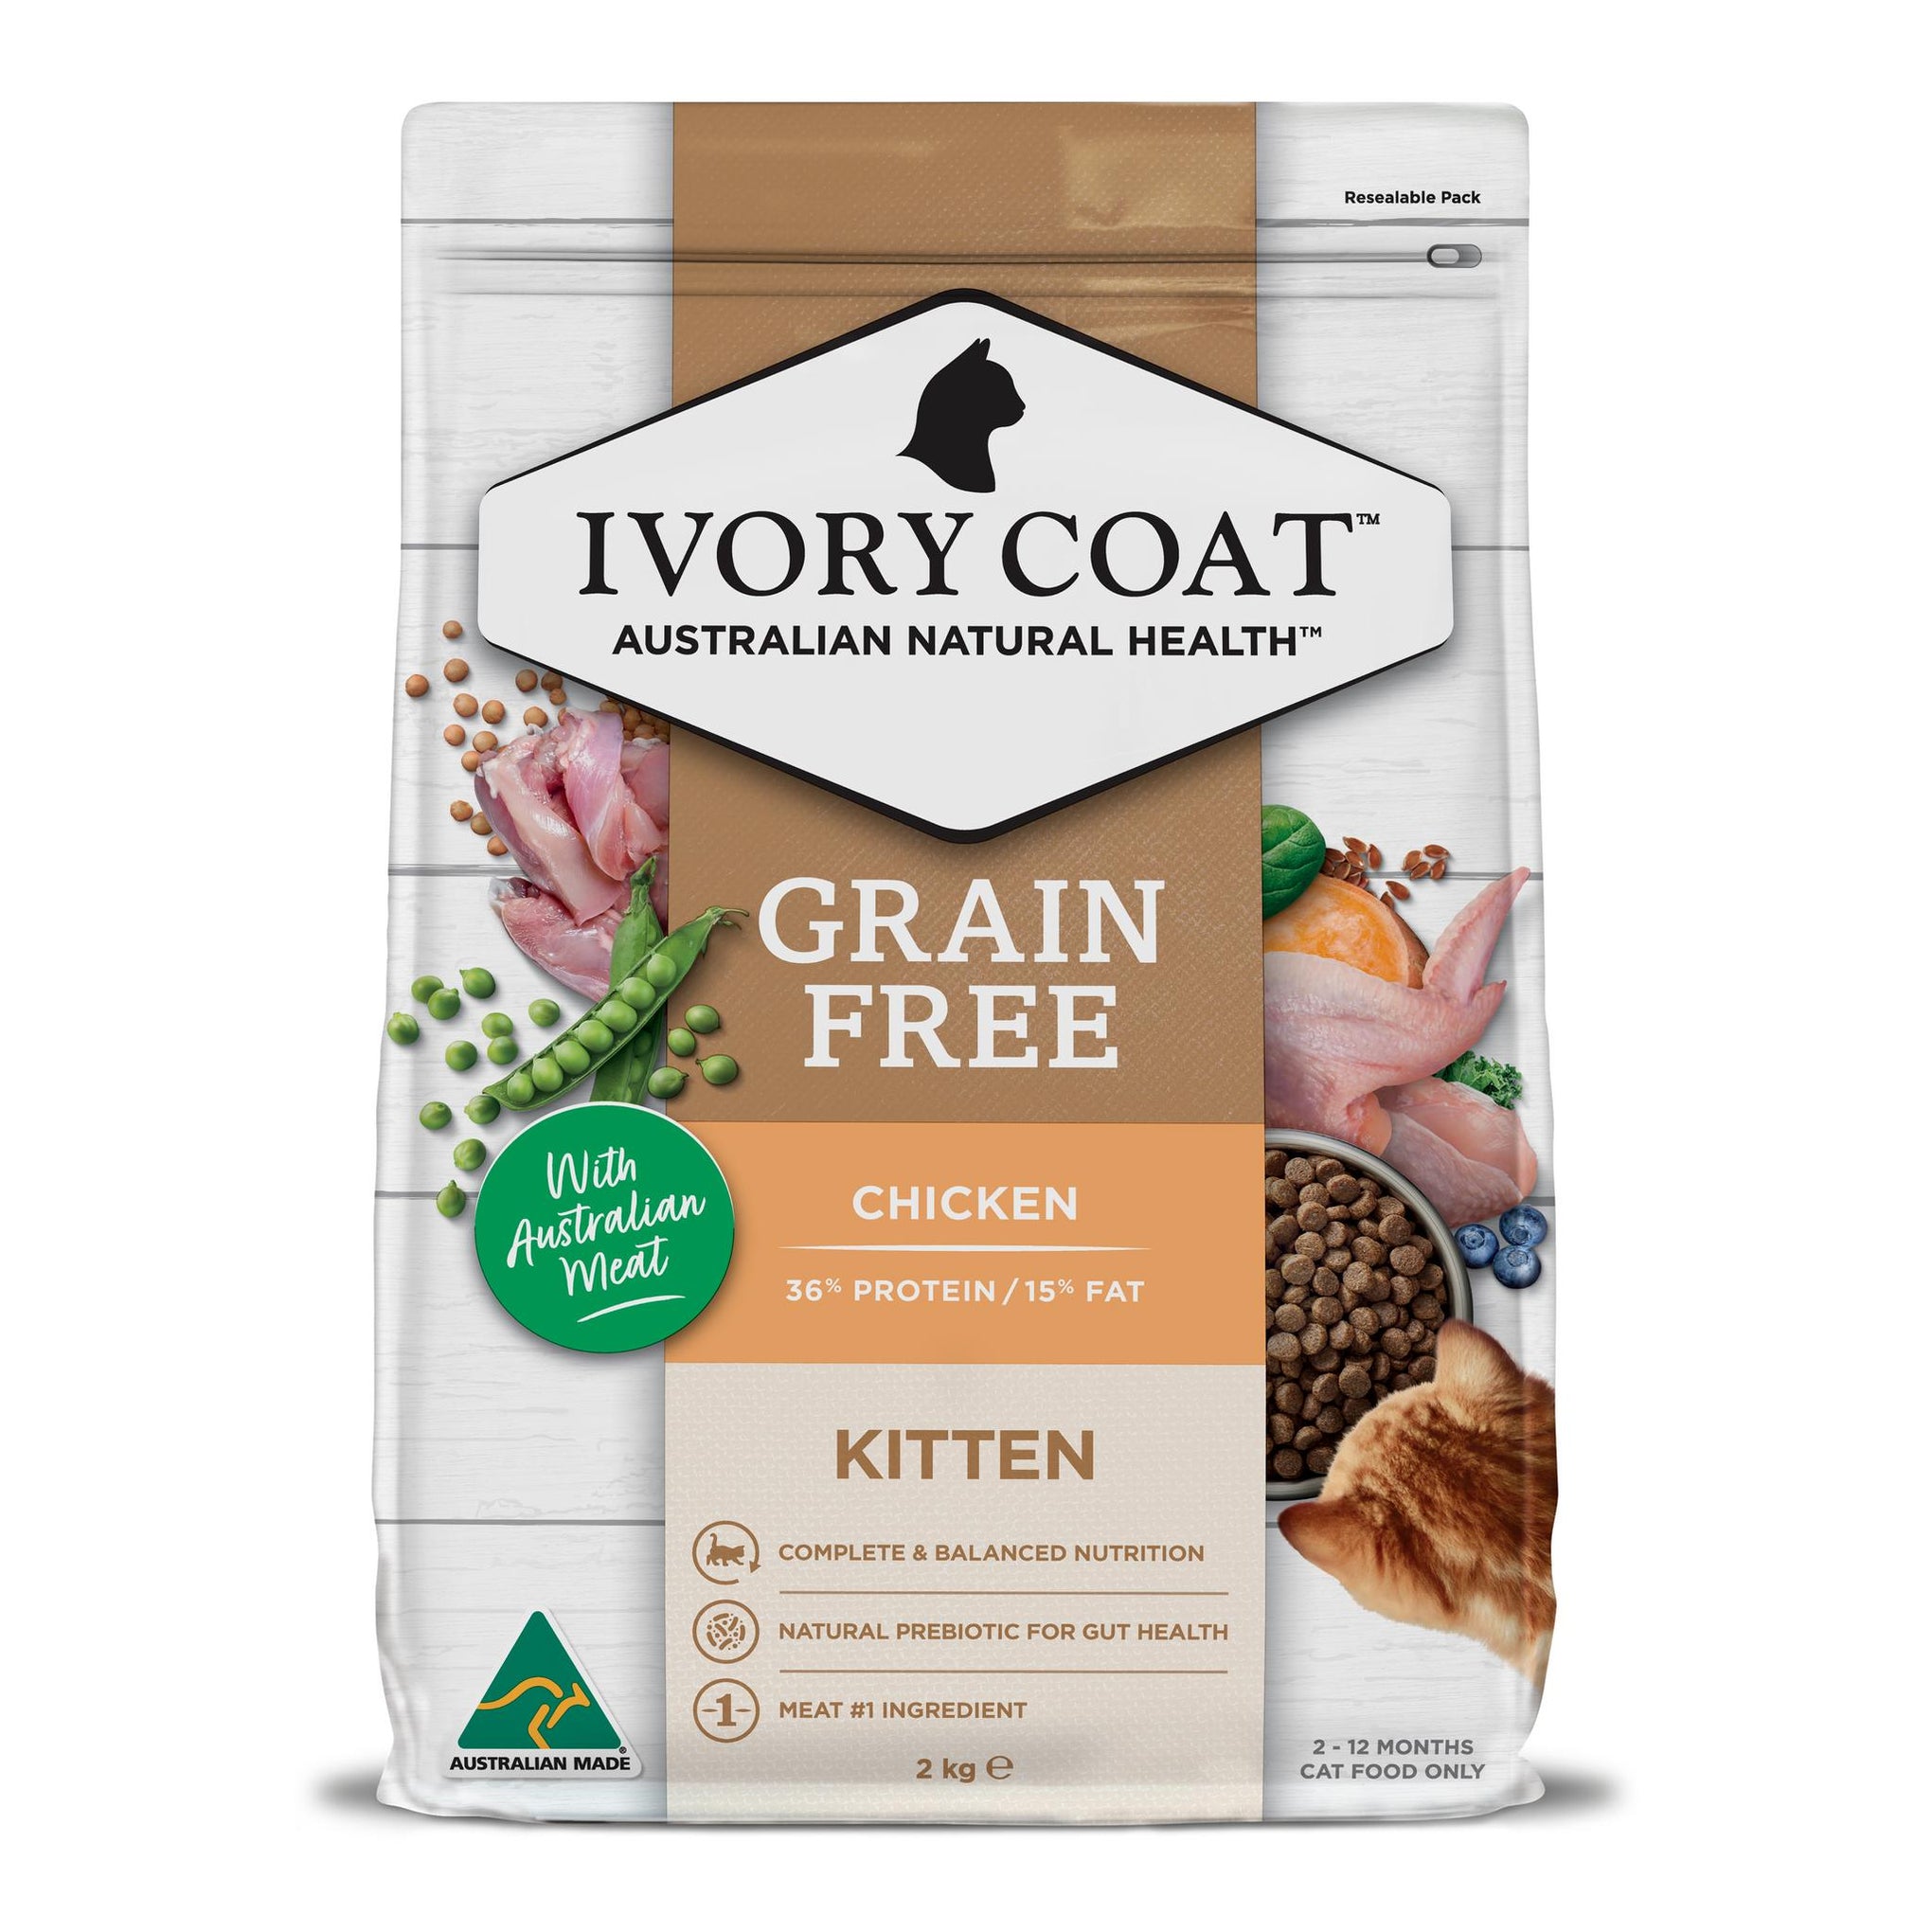 Ivory Coat Grain Free Kitten Grain Free Chicken Cat Dry Food 2kg